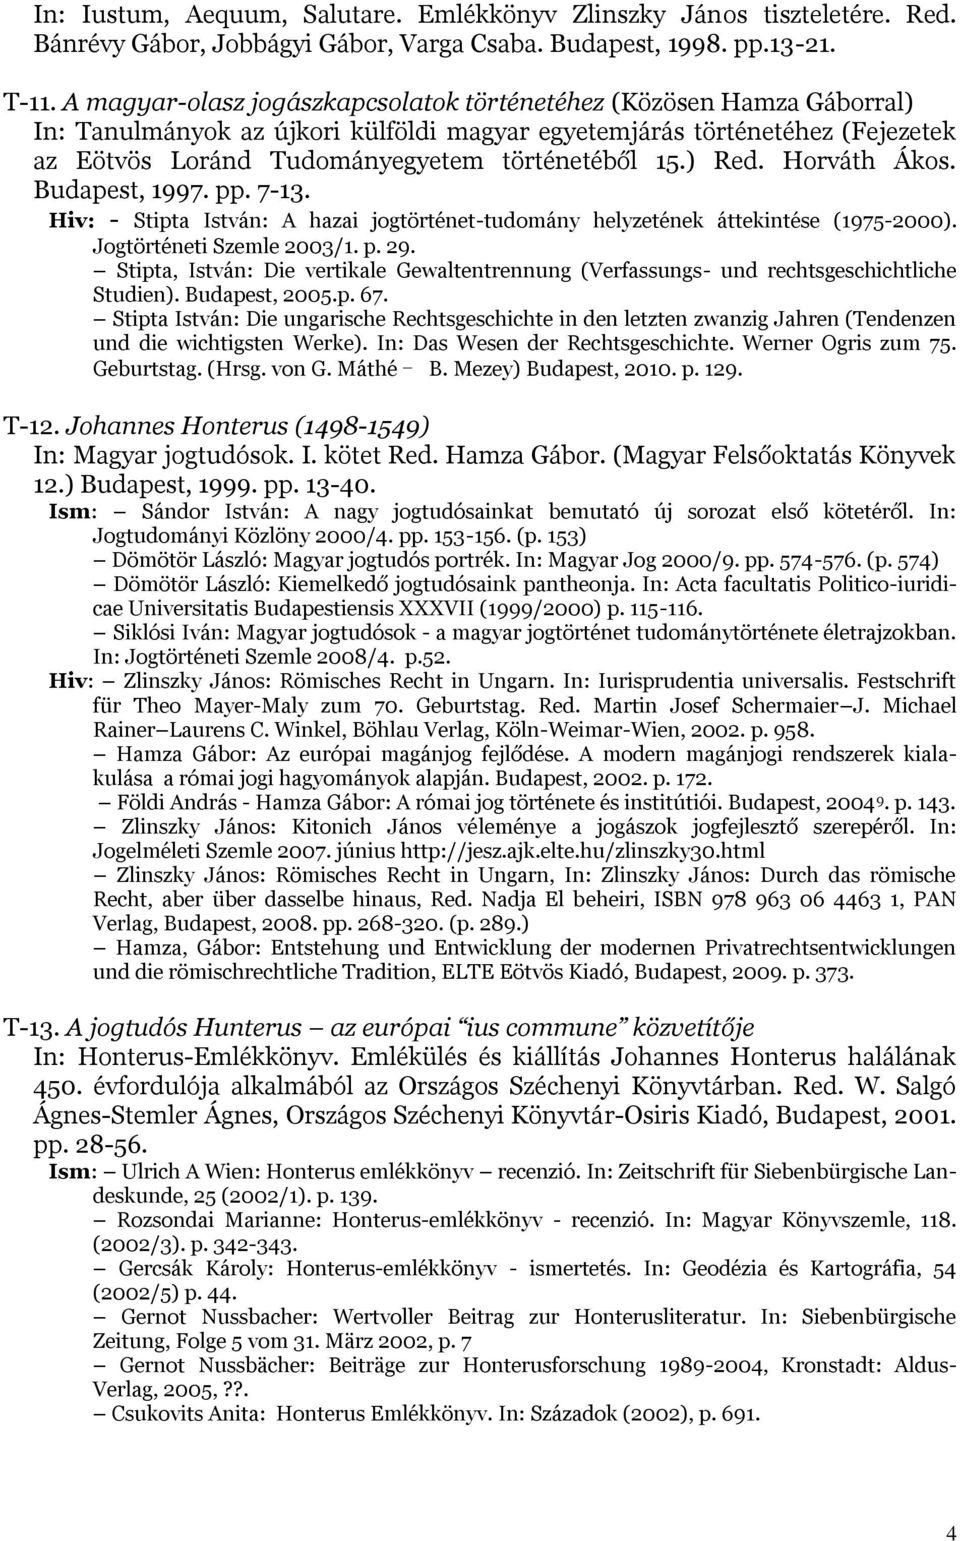 ) Red. Horváth Ákos. Budapest, 1997. pp. 7-13. Hiv: - Stipta István: A hazai jogtörténet-tudomány helyzetének áttekintése (1975-2000). Jogtörténeti Szemle 2003/1. p. 29.